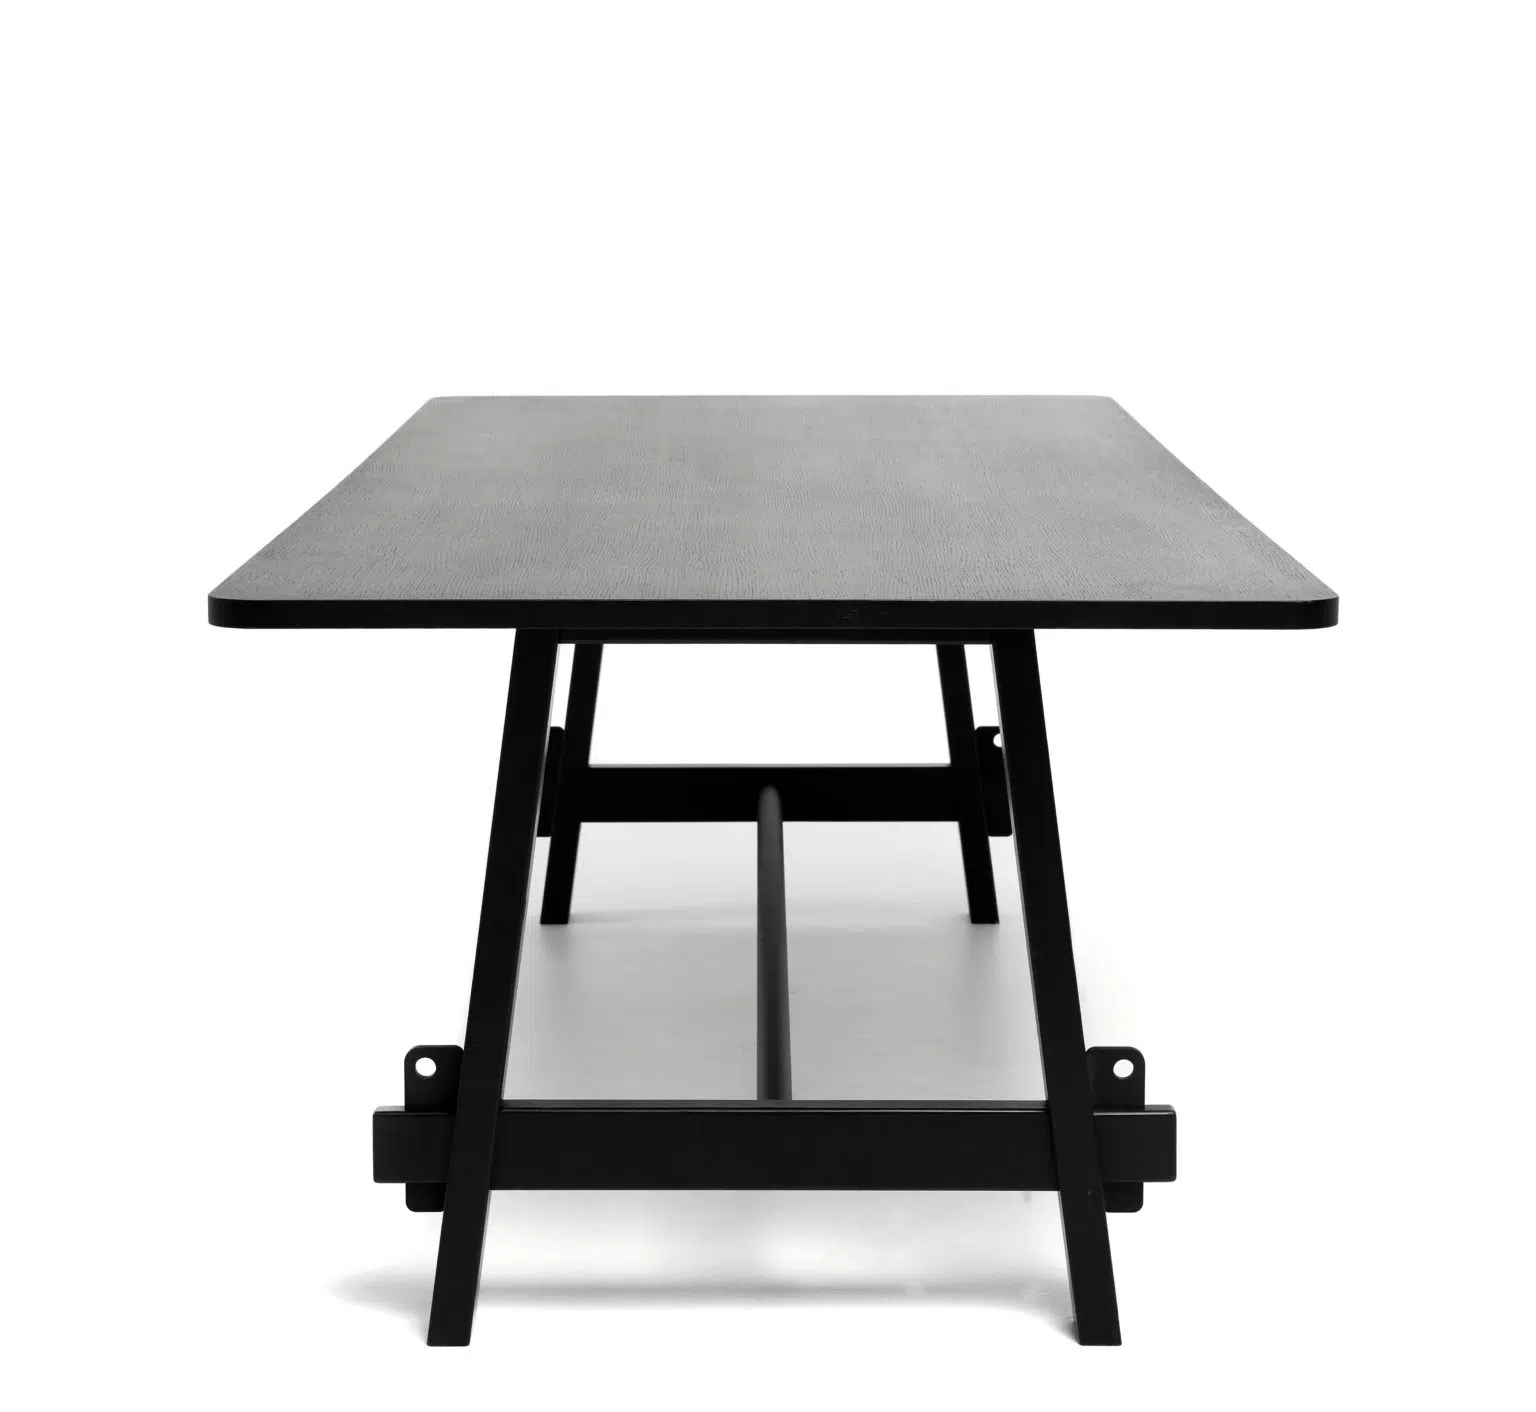 Lumberyard-table-no-chairs